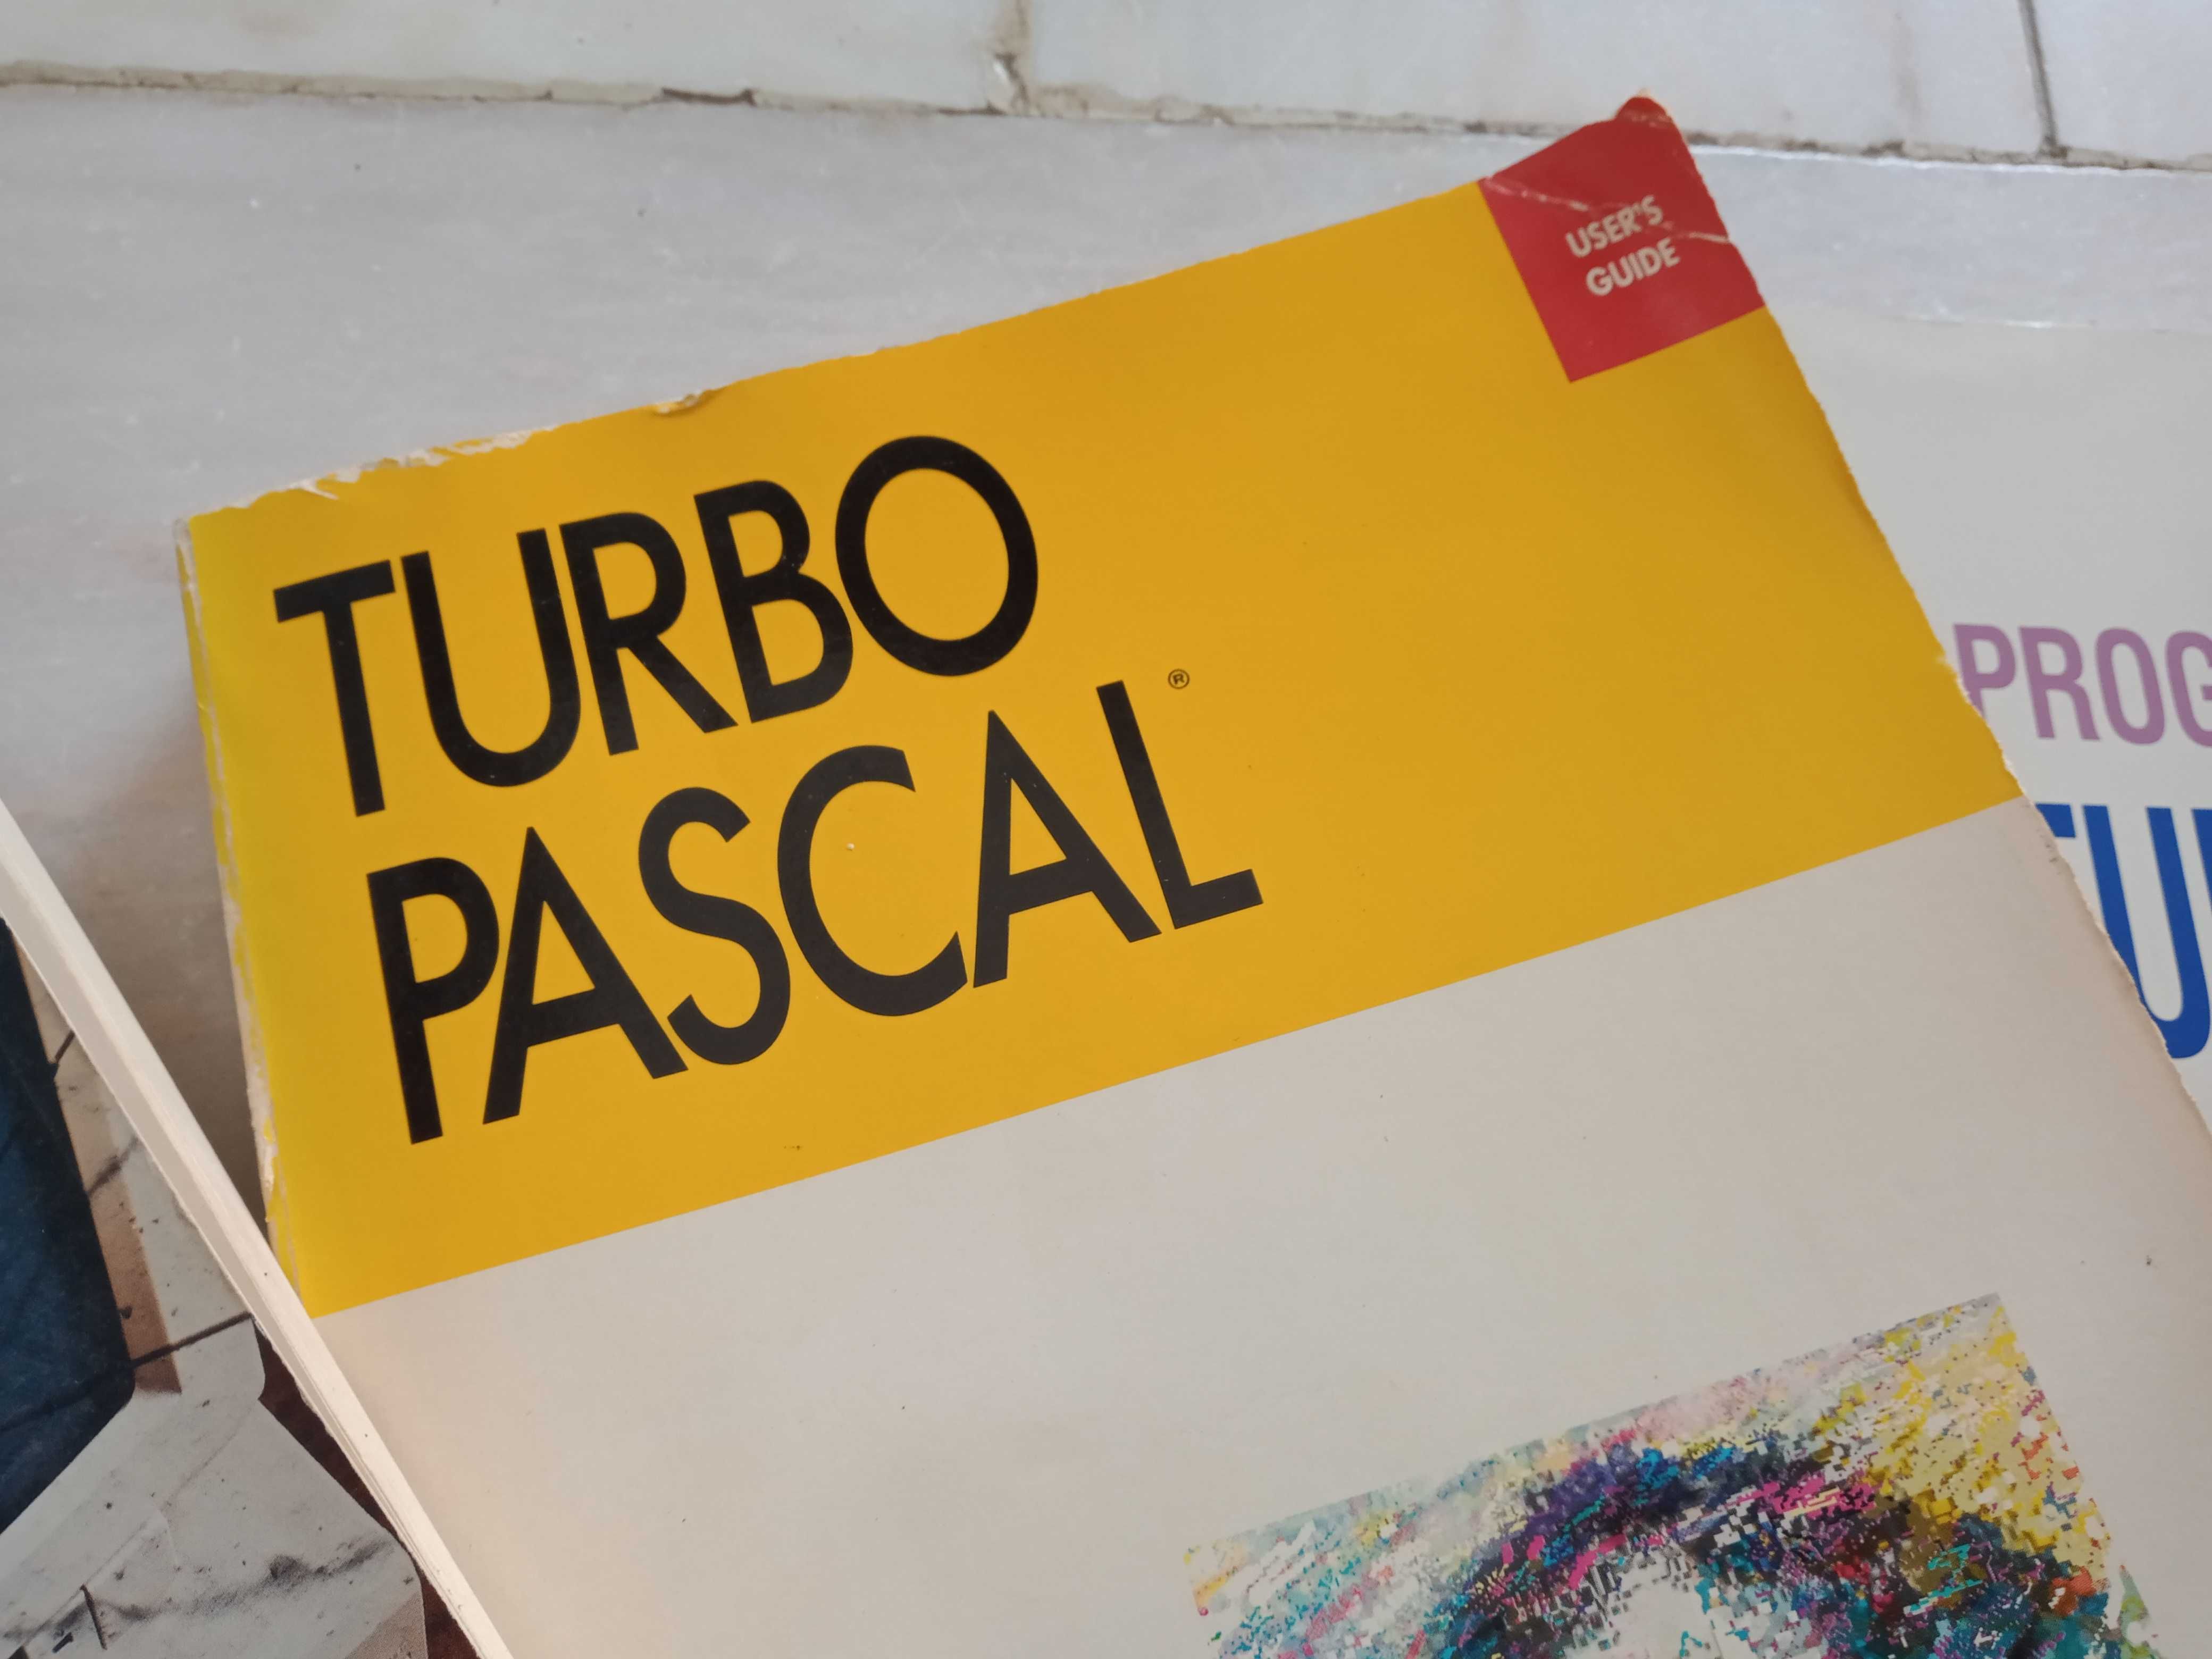 Livros Programação - Turbo Pascal Turbo C C++ Vírus Computador BASIC